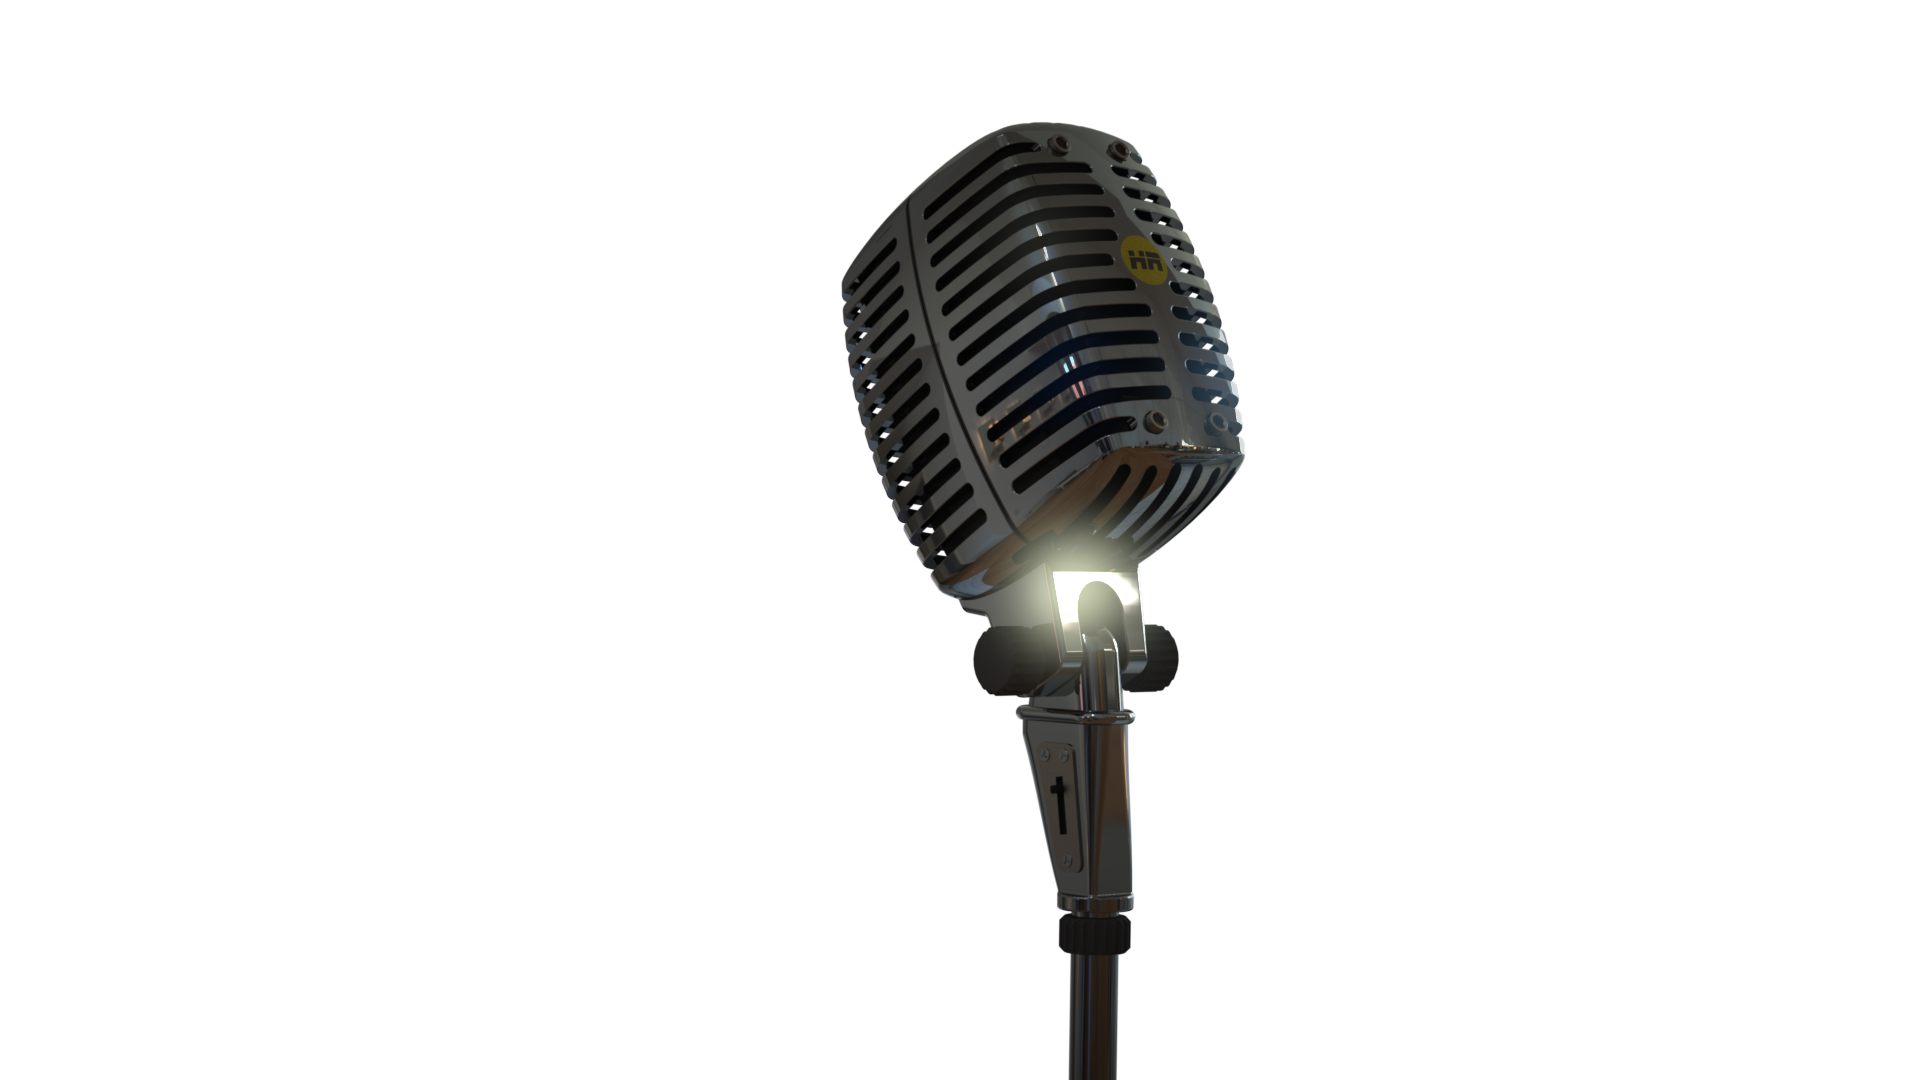 Render of microphone